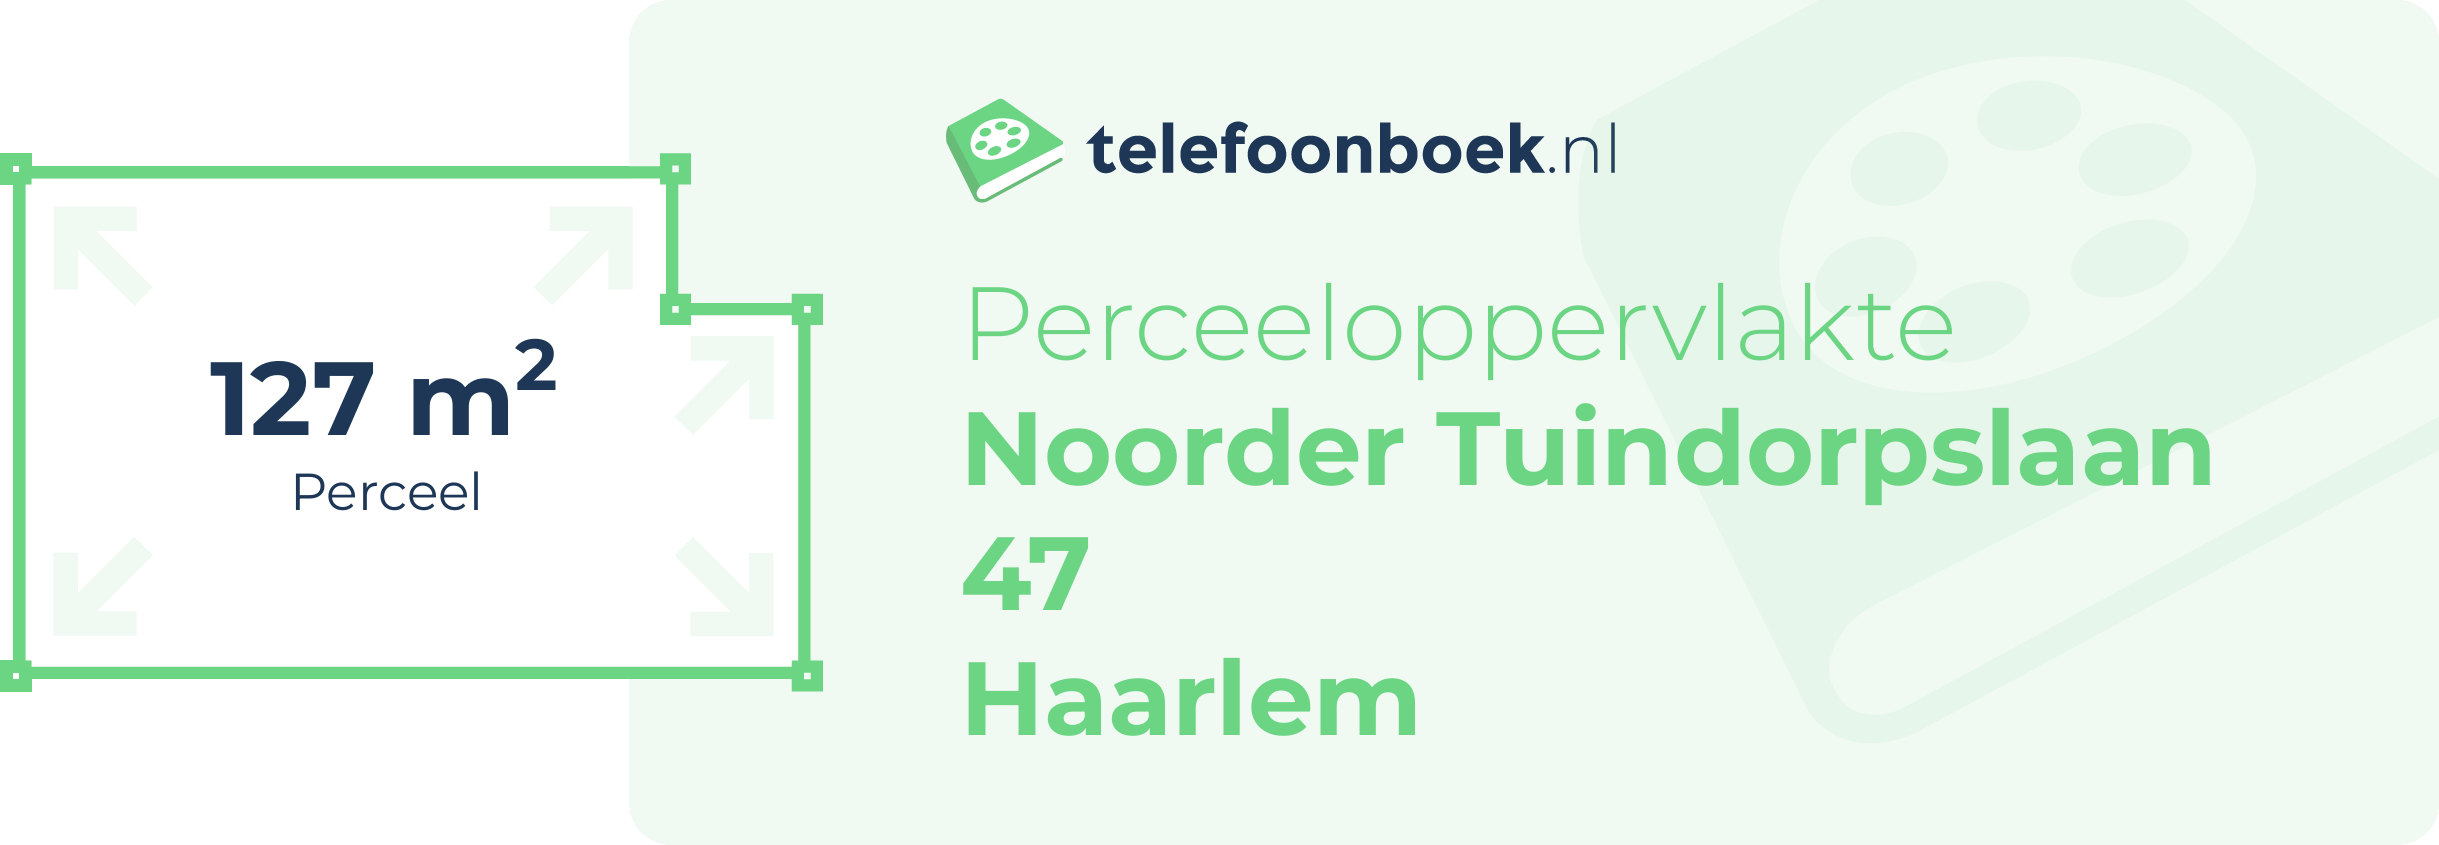 Perceeloppervlakte Noorder Tuindorpslaan 47 Haarlem